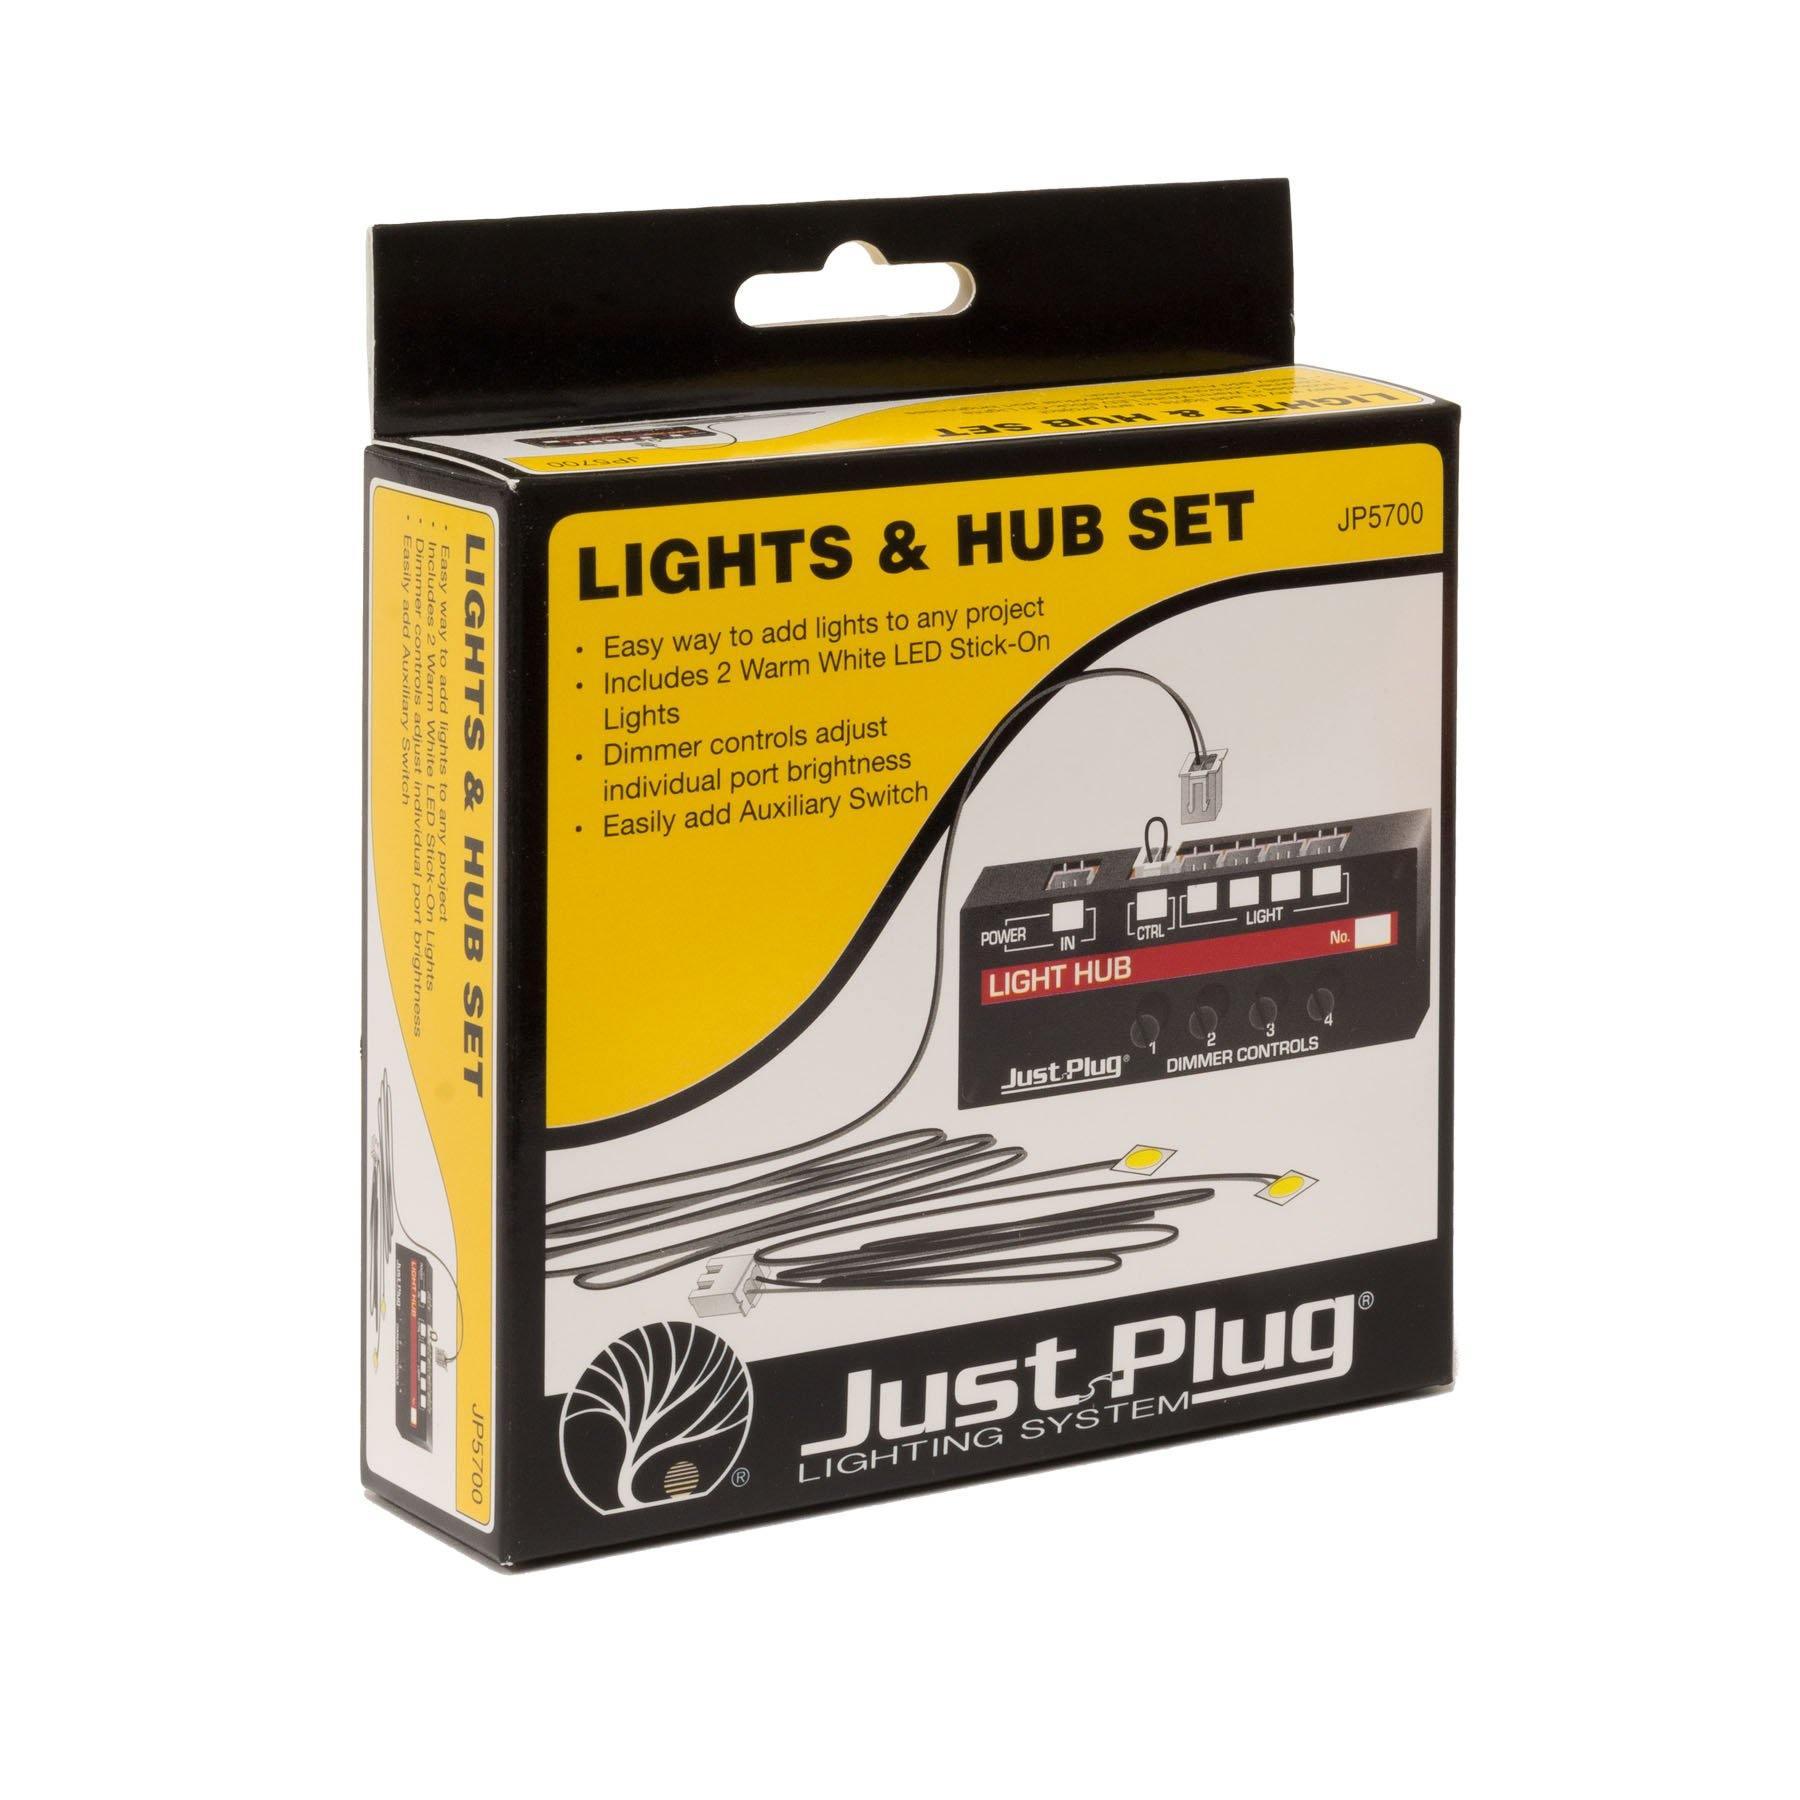 Woodland Scenics 5700 | Just Plug Lighting System - Lights & Hub Set | Multi Scale